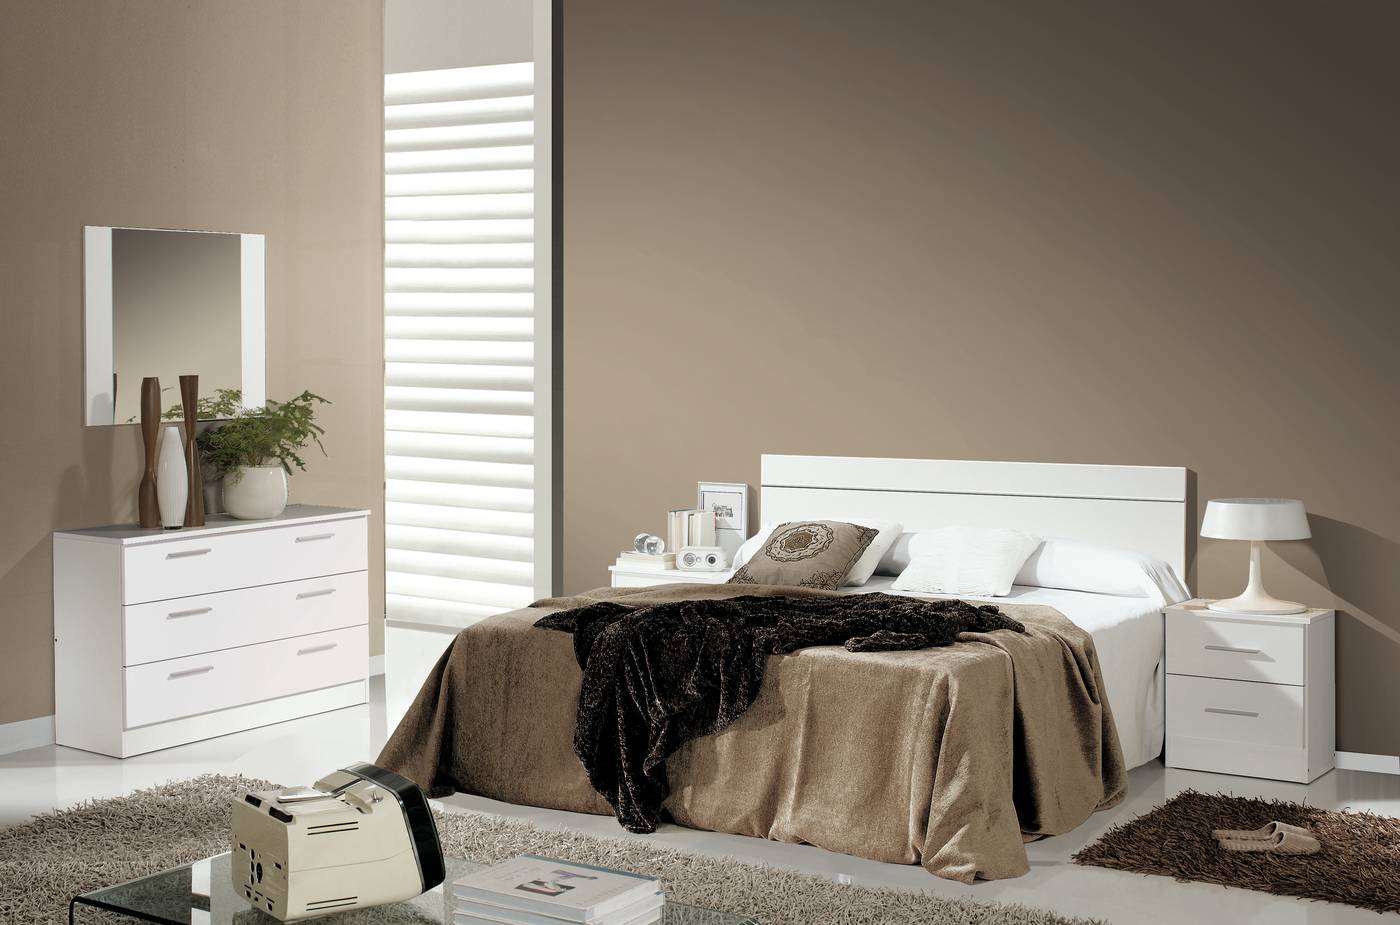 Dormitorio Blanco,Roble,Pizarra - Dormitorio matrimonio color blanco, roble claro o pizarra combinado con blanco